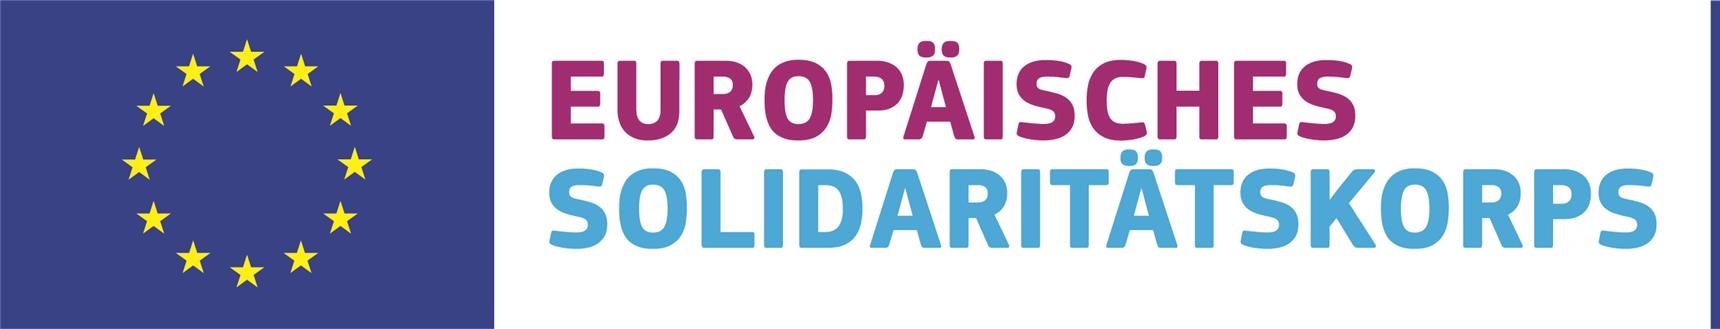 Solidaritaetskorps_Logo